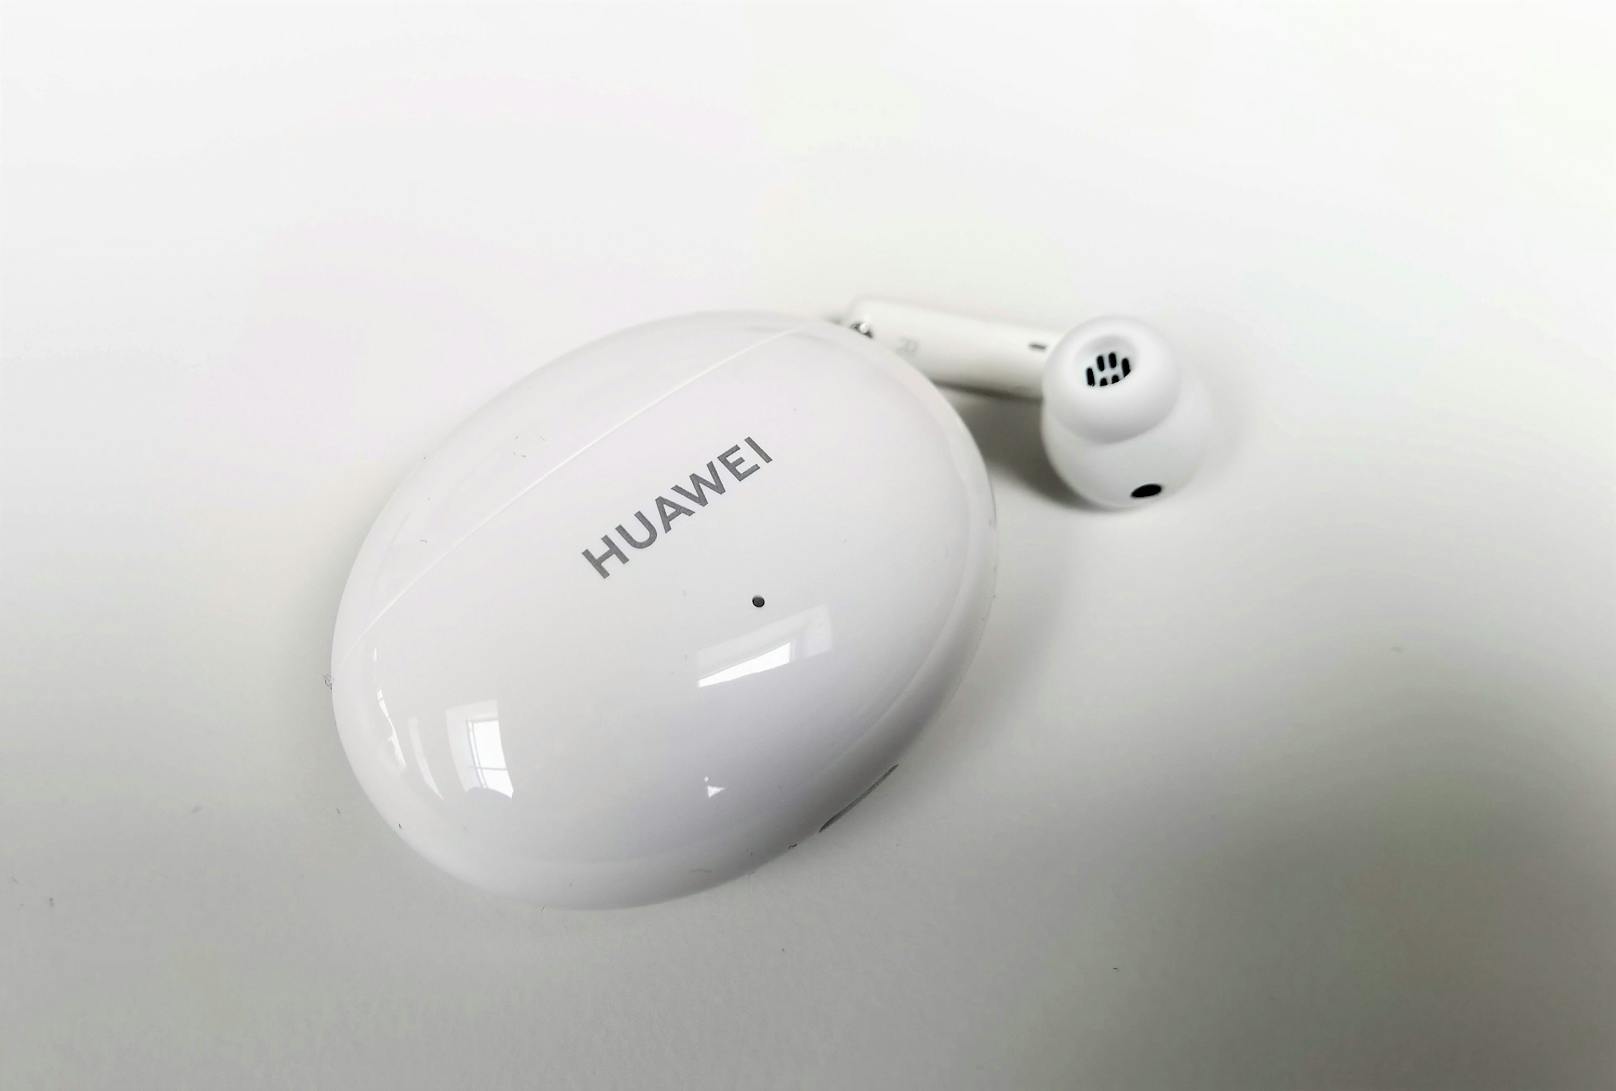 Die Kopfhörer haben sich beim Design etwas im Vergleich zu den Vorgängern verändert. Das Lade-Case ist nun oval, fast Ei-förmig und in schwarzer oder weißer Hochglanz-Optik.